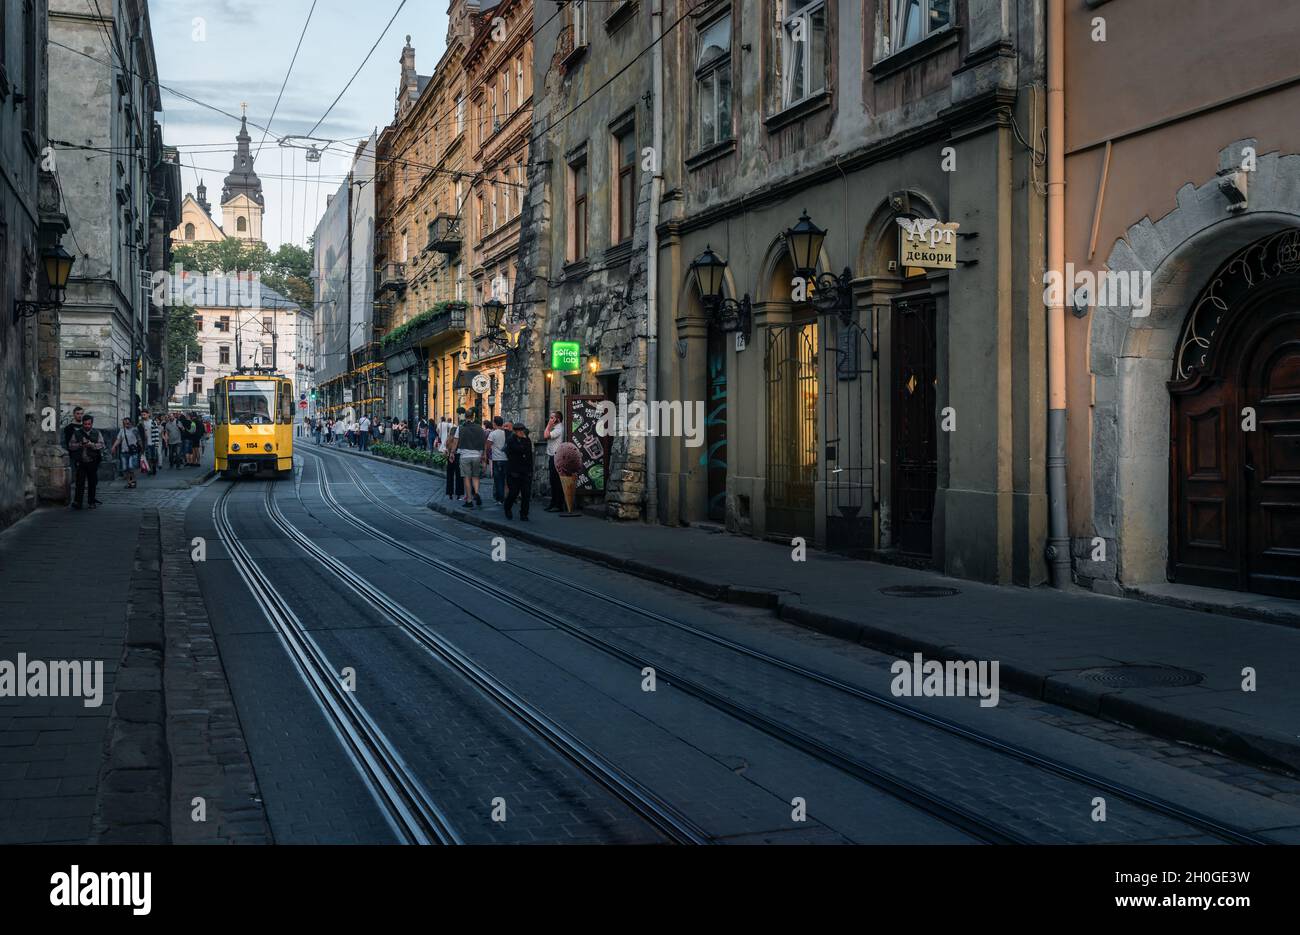 Ruska Straße mit der traditionellen gelben Straßenbahn und St. Michael Kirche im Hintergrund - Lviv, Ukraine Stockfoto